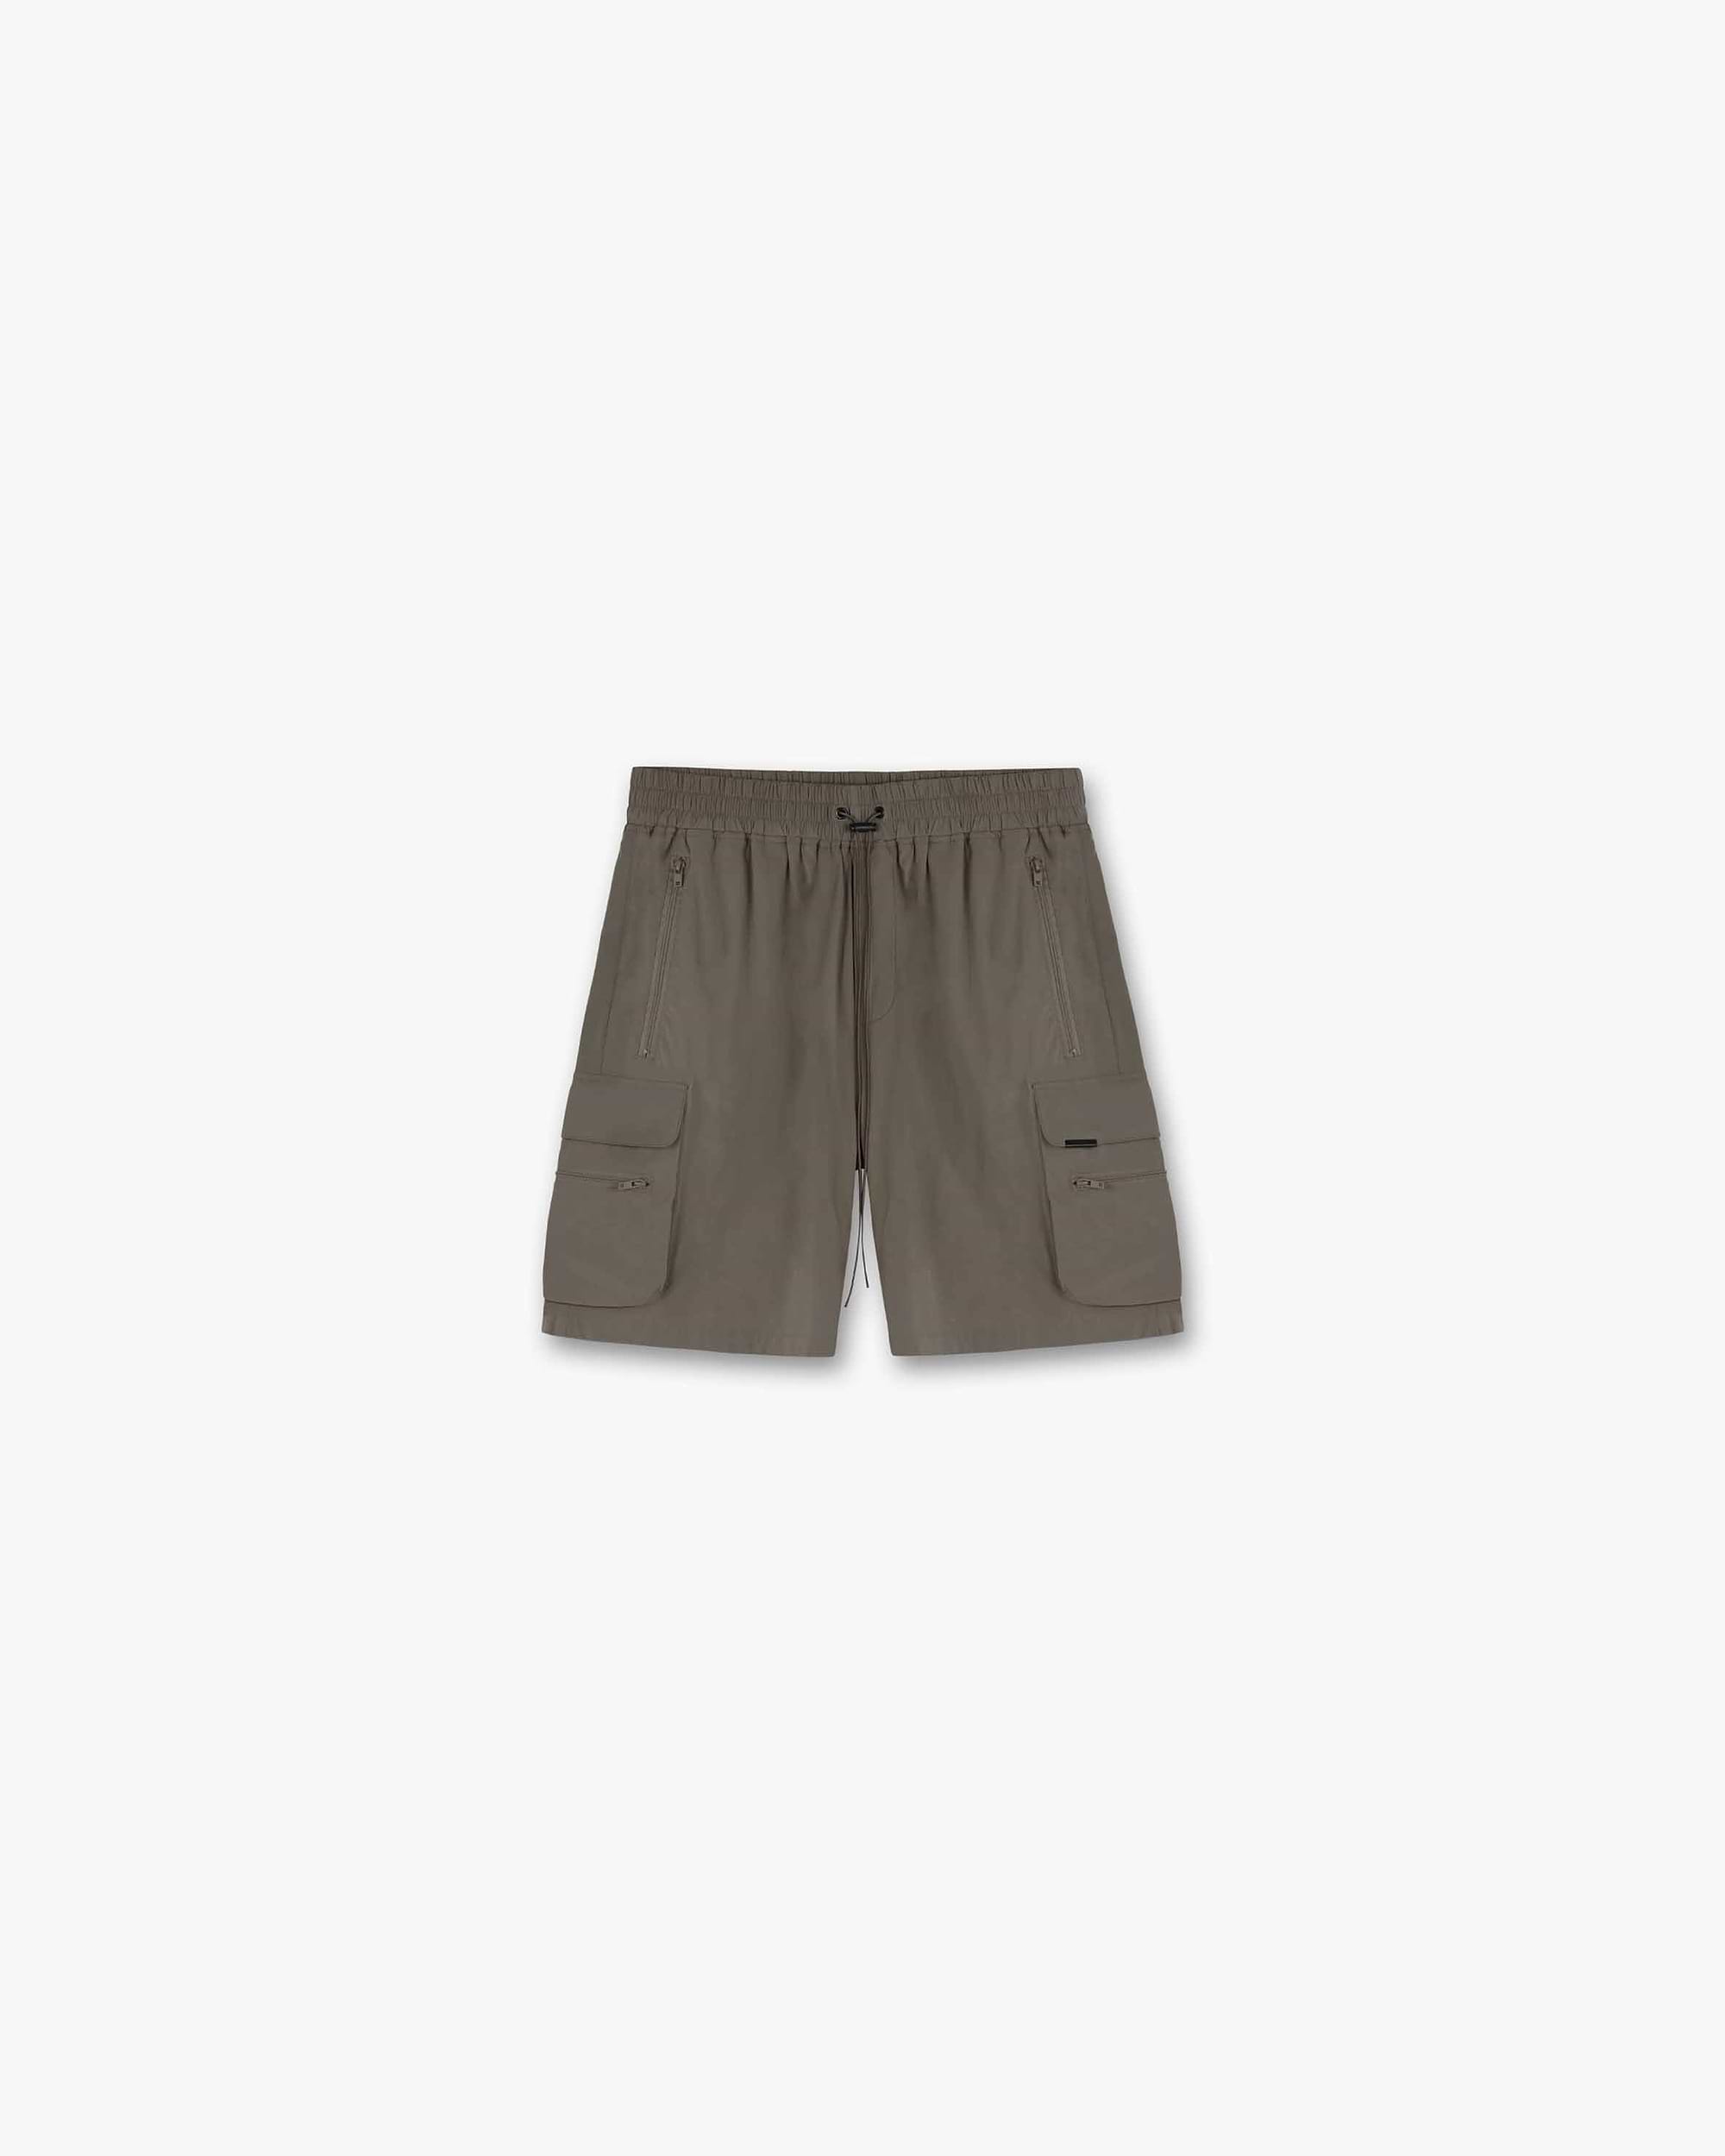 247 Shorts | Olive Shorts 247 | Represent Clo